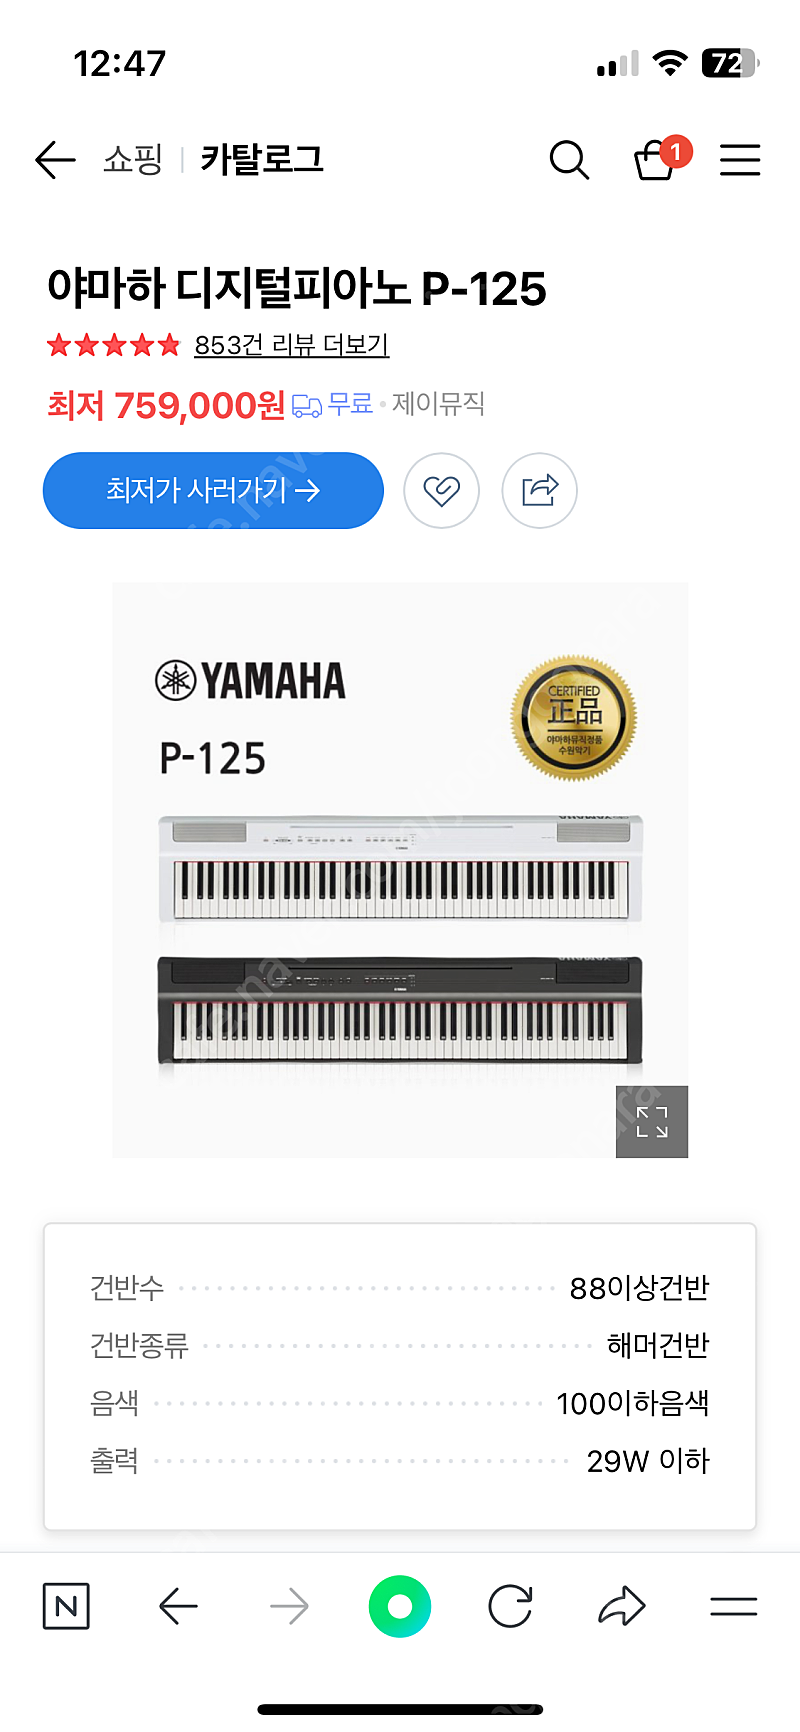 야마하 p 125 전자피아노